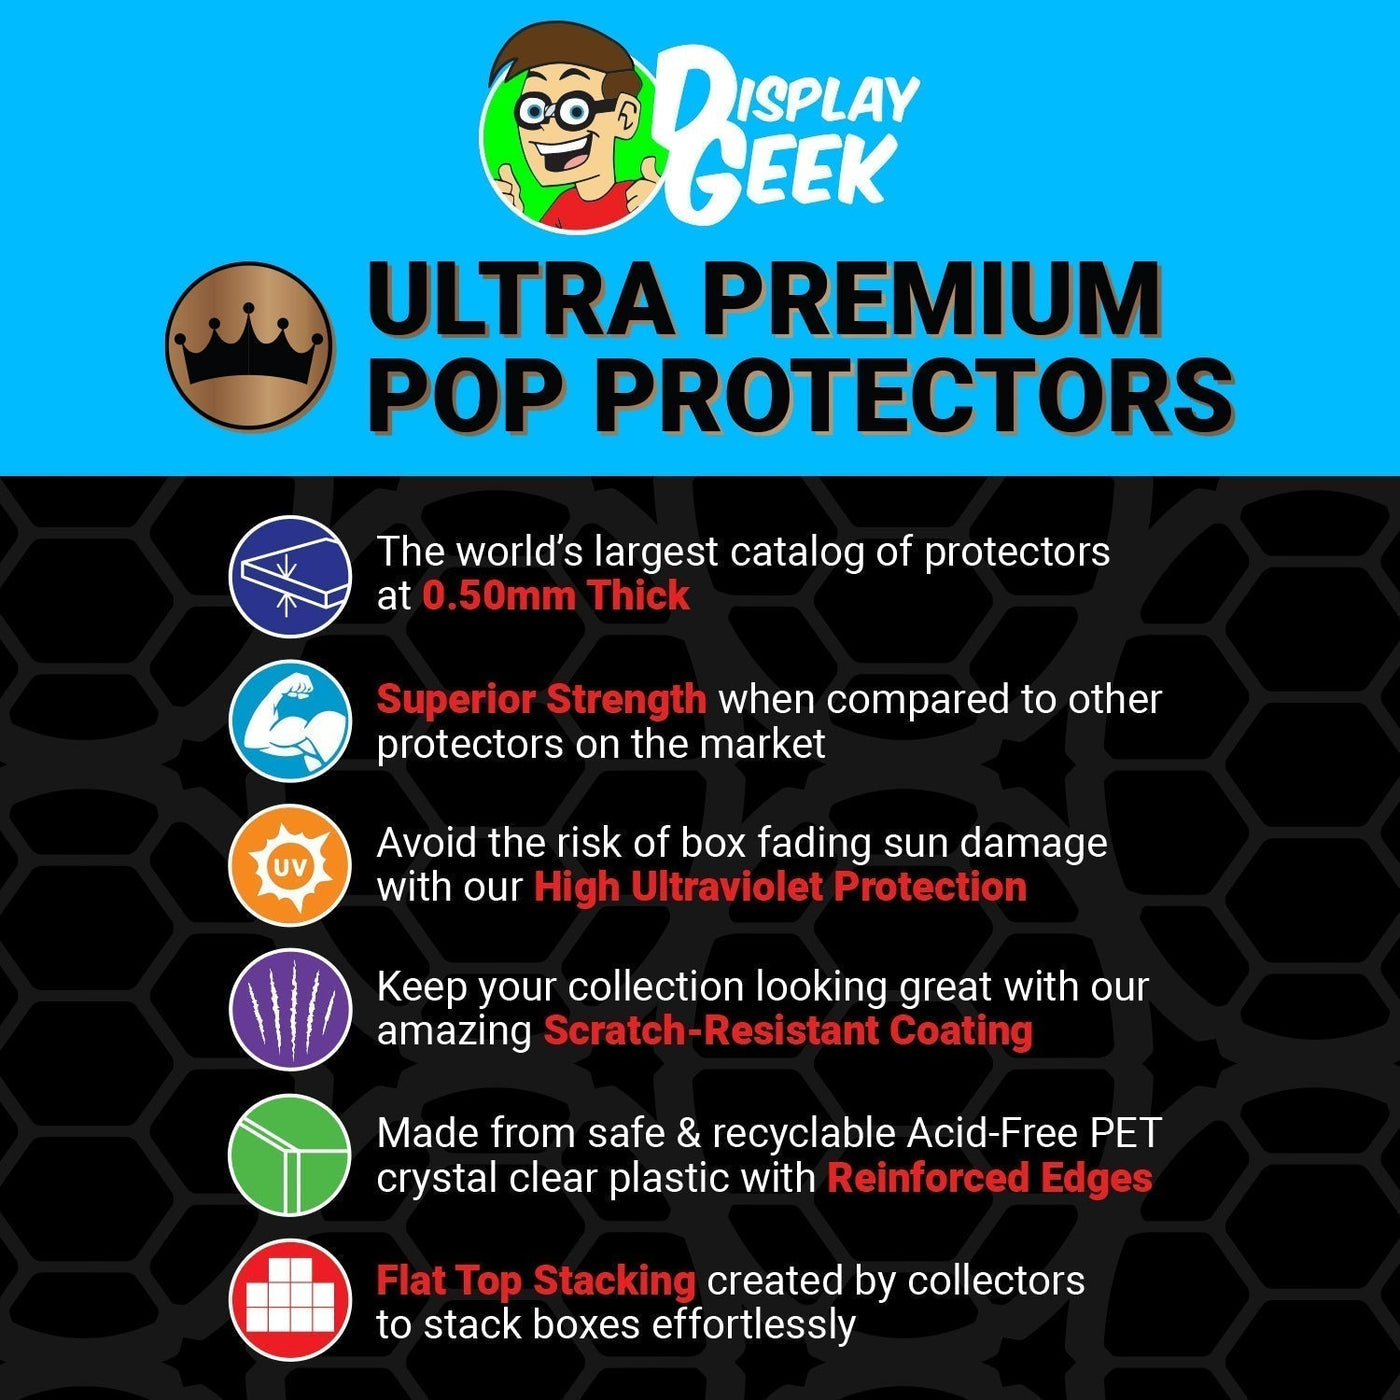 Pop Protector for 2 Pack Ajit & Pharol Funko Pop on The Protector Guide App by Display Geek